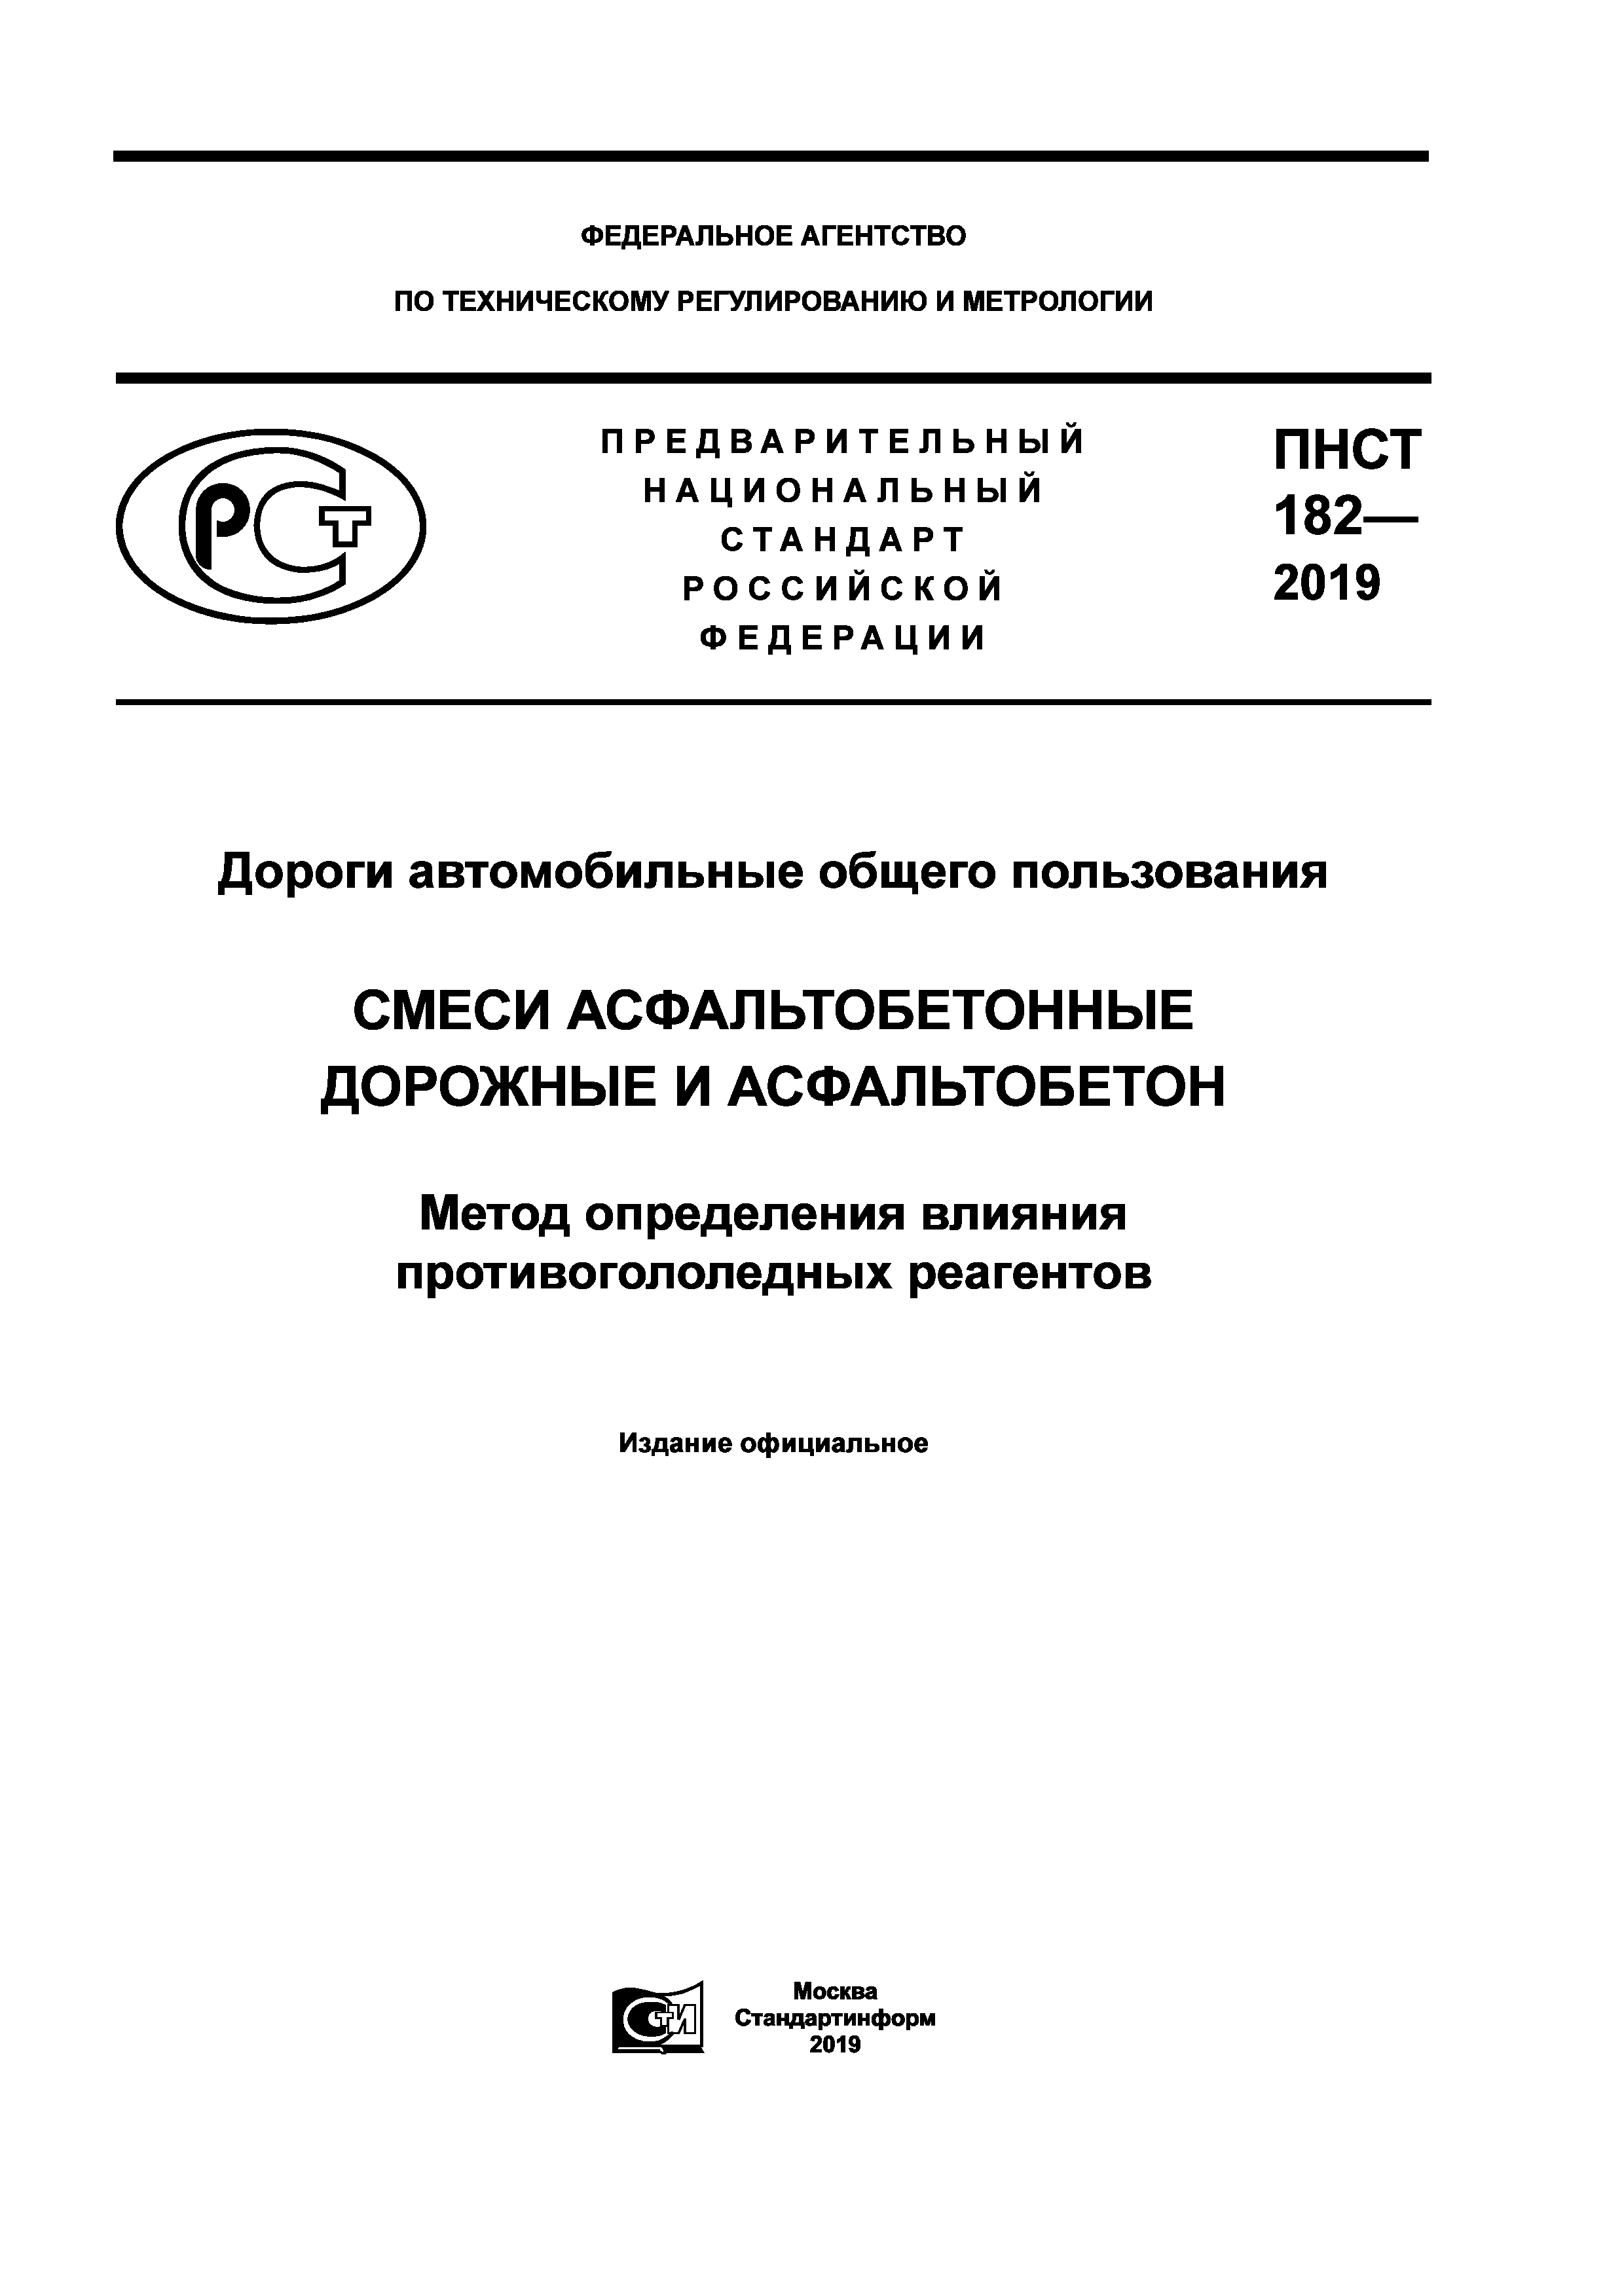 ПНСТ 182-2019